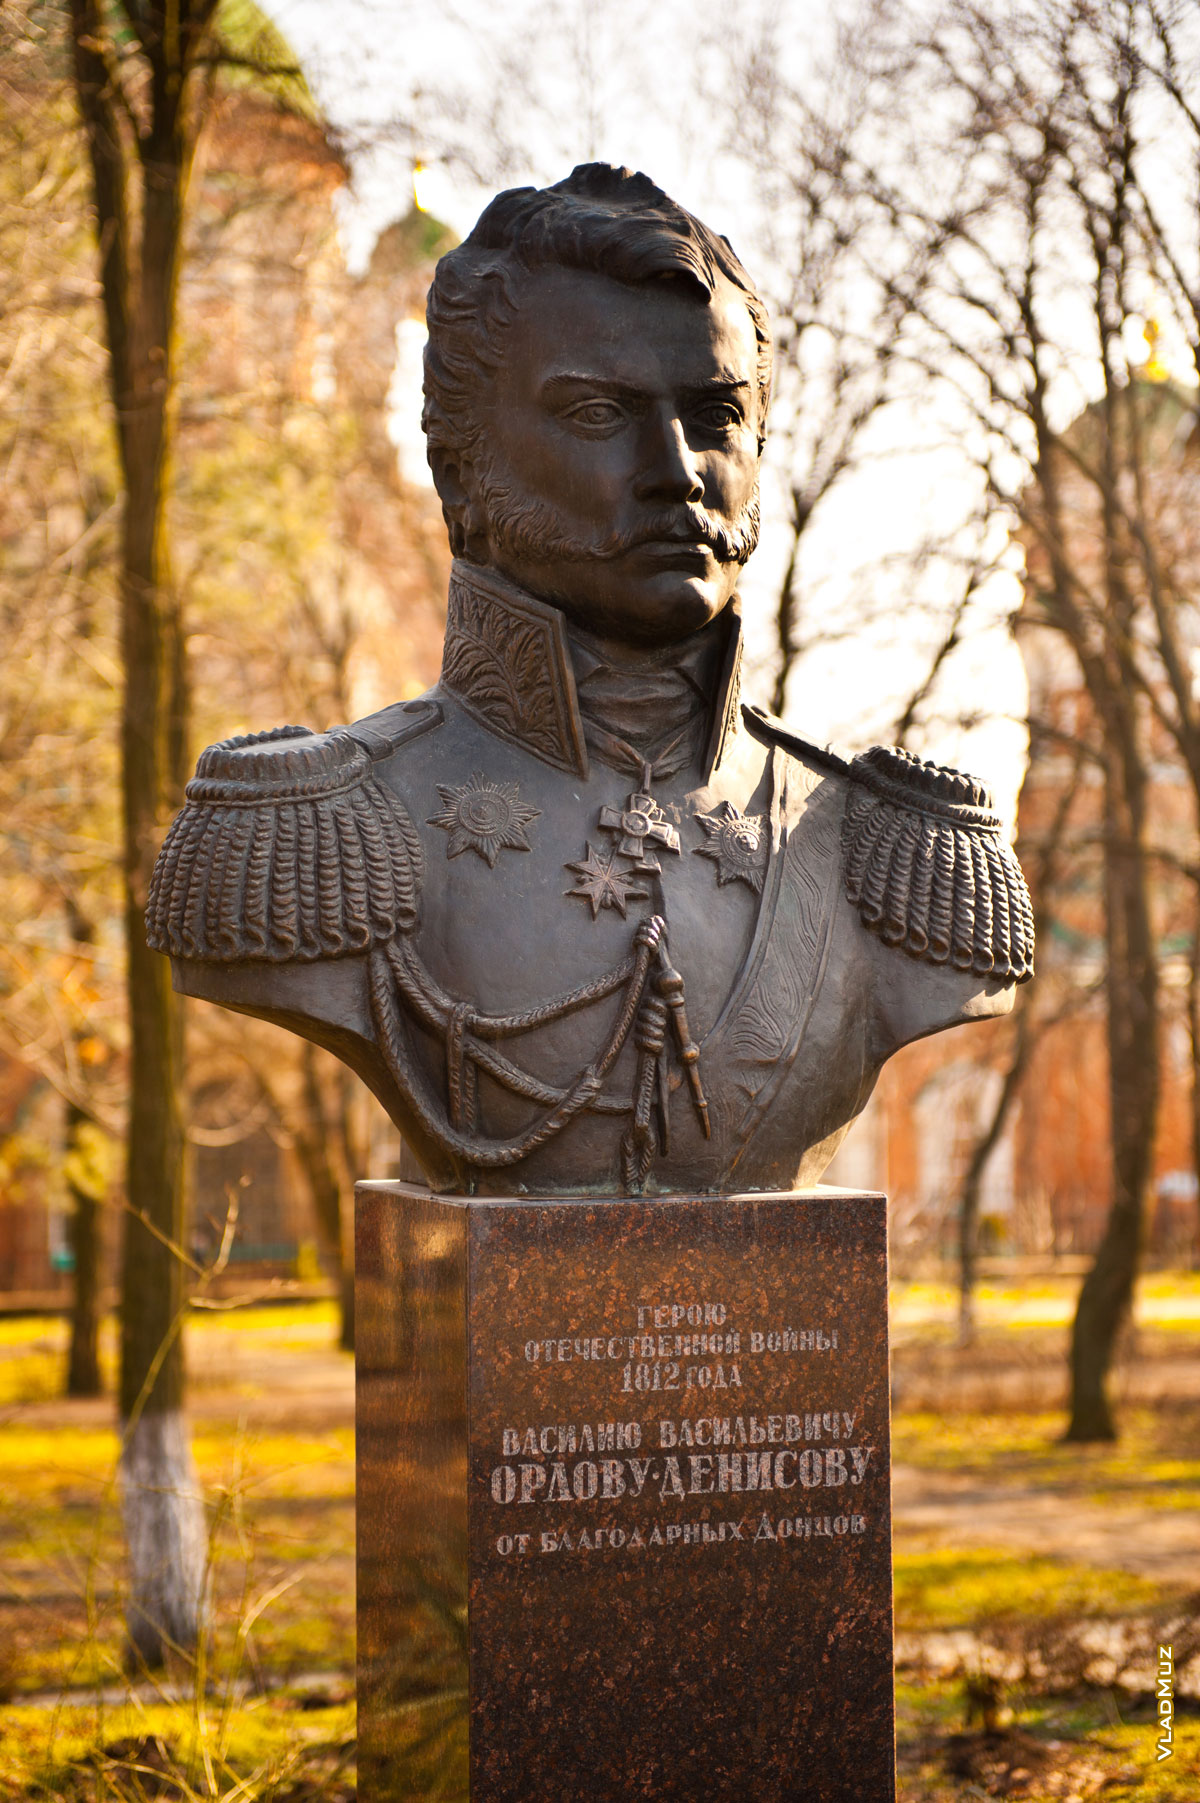 Фото памятника Орлову-Денисову крупным планом. Фронтальный вид